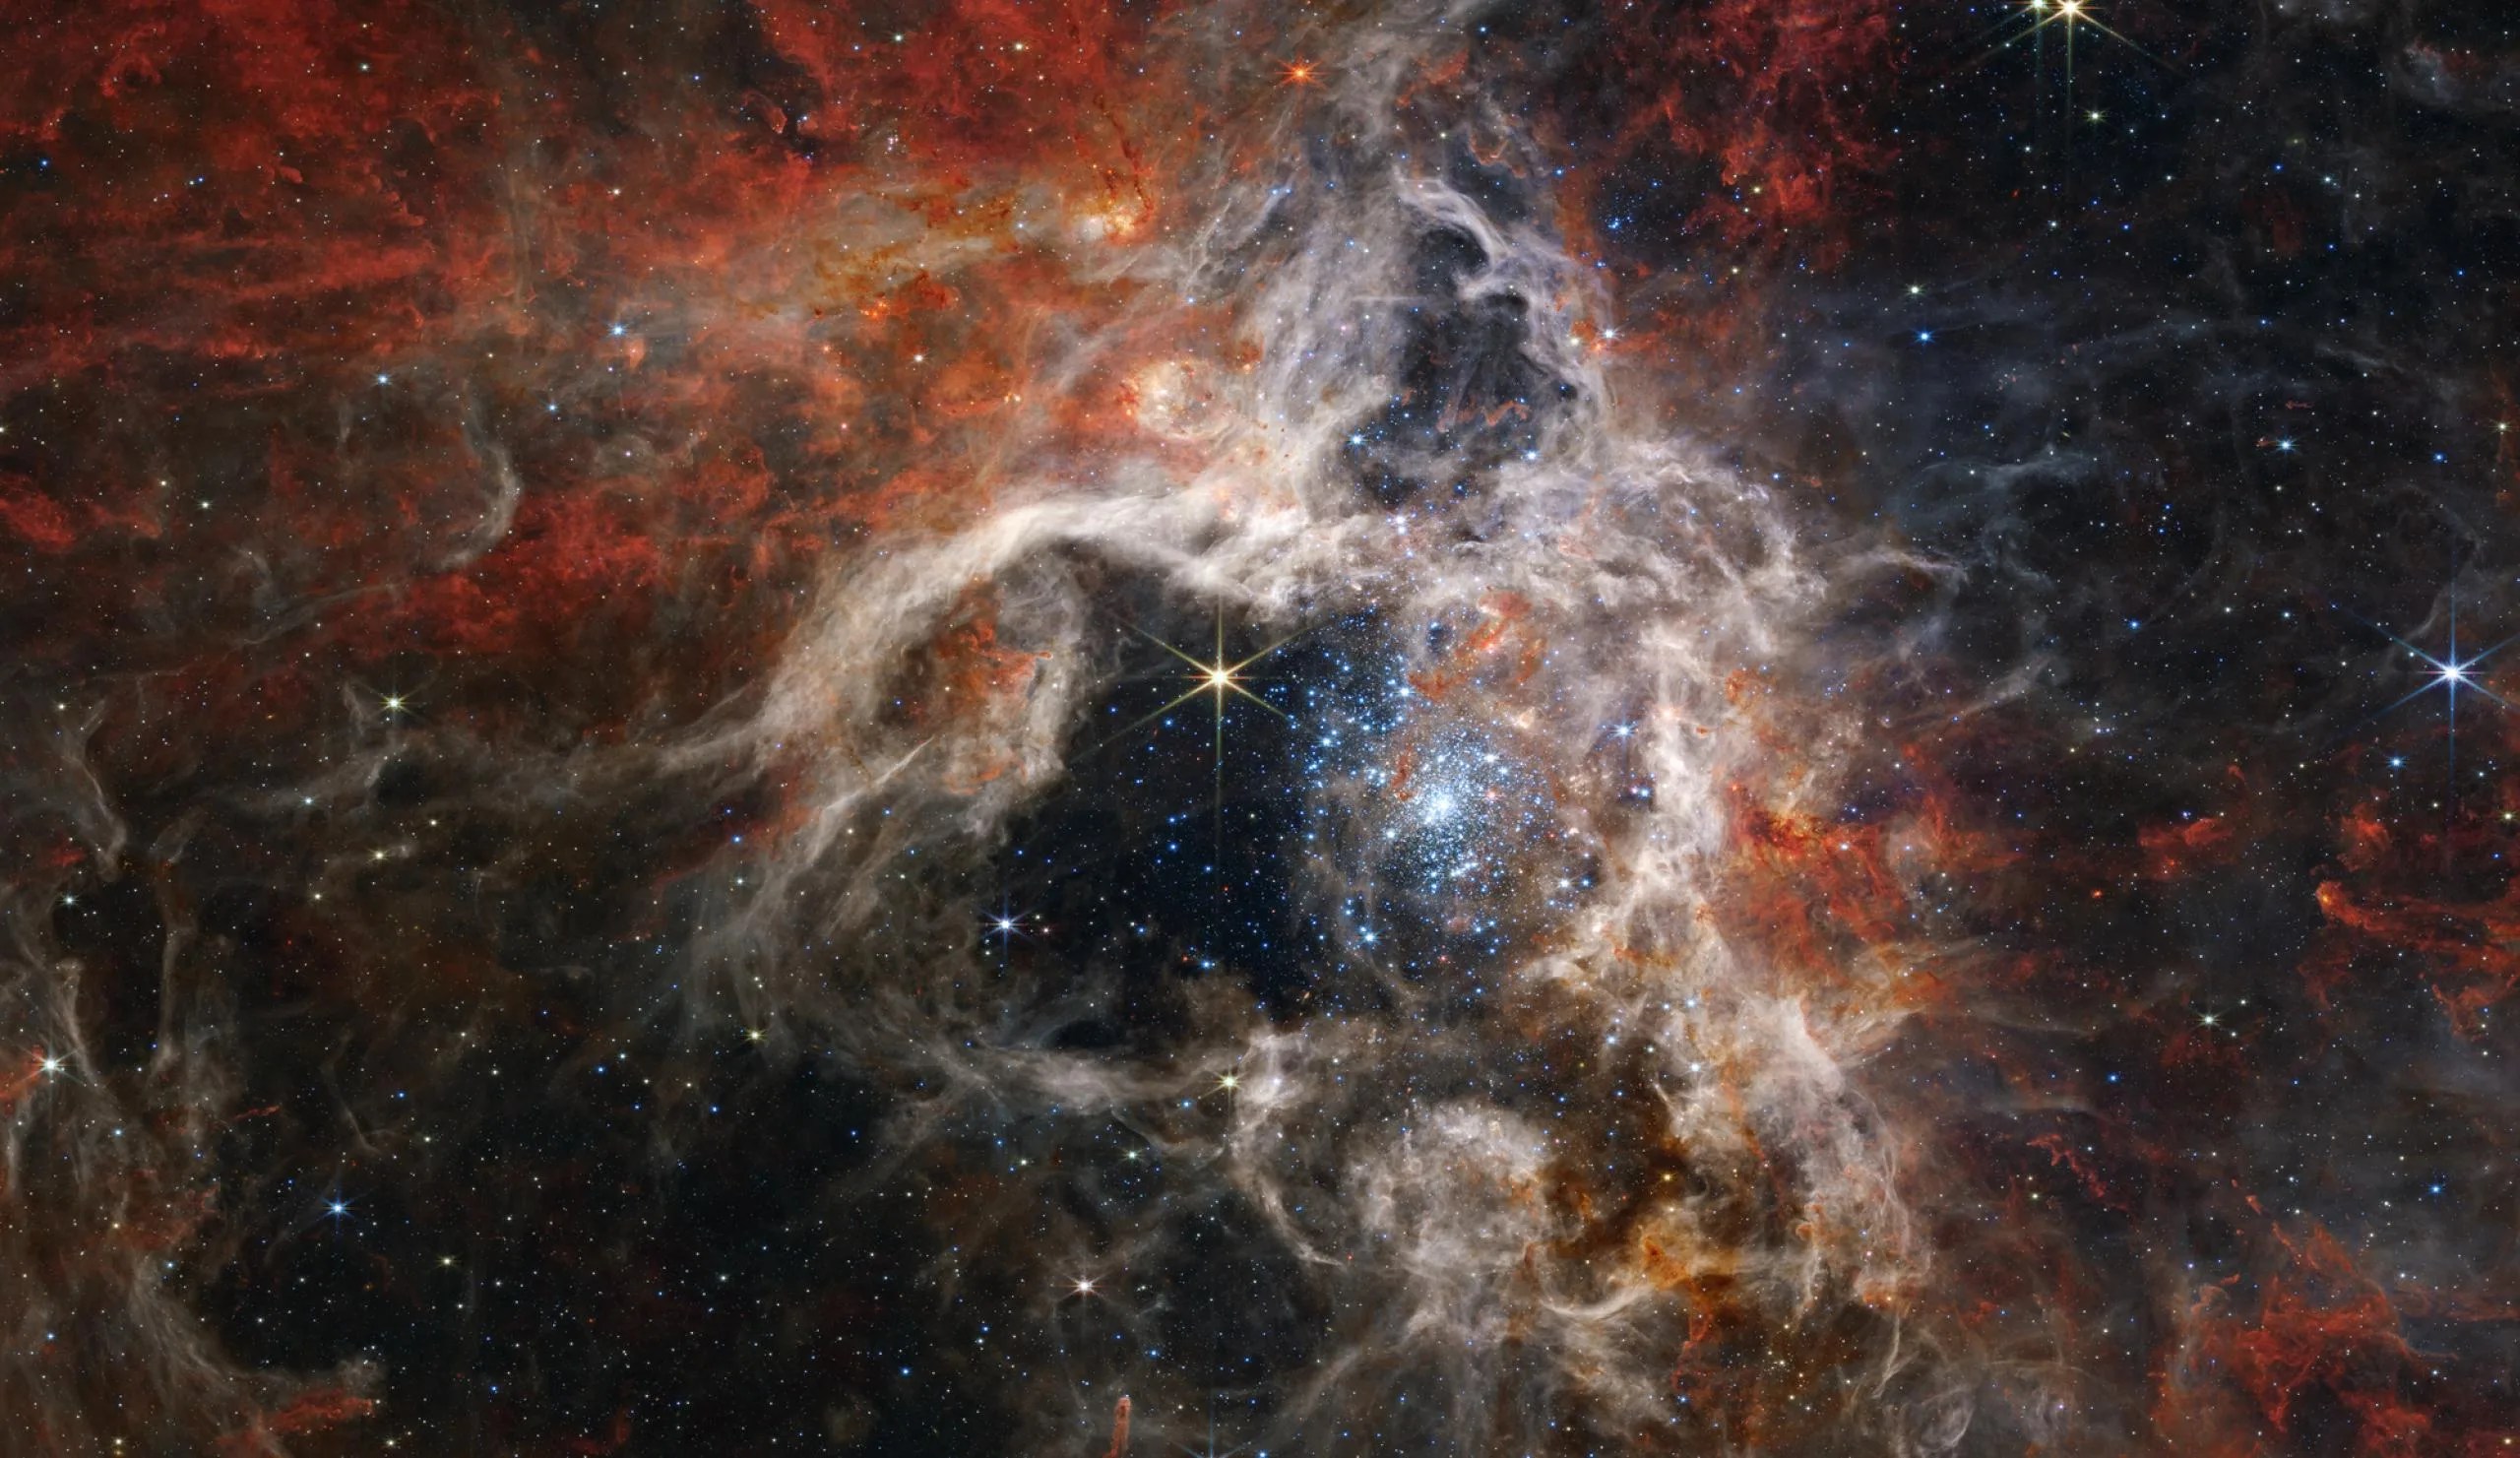 Una imagen espacial captada por el telescopio Webb. Esponjosas nubes de una nebulosa, de color tostado con reflejos parduzcos, rodean una zona central negra. Dentro de esa zona, el punto focal de la imagen es una gran estrella amarilla con ocho puntas largas y delgadas. A la derecha de la estrella está un brillante cúmulo de estrellas de forma ovalada. Las estrellas dentro del cúmulo aparecen como pequeños destellos de color azul pálido. El cúmulo está más densamente poblado en su núcleo y se dispersa hacia